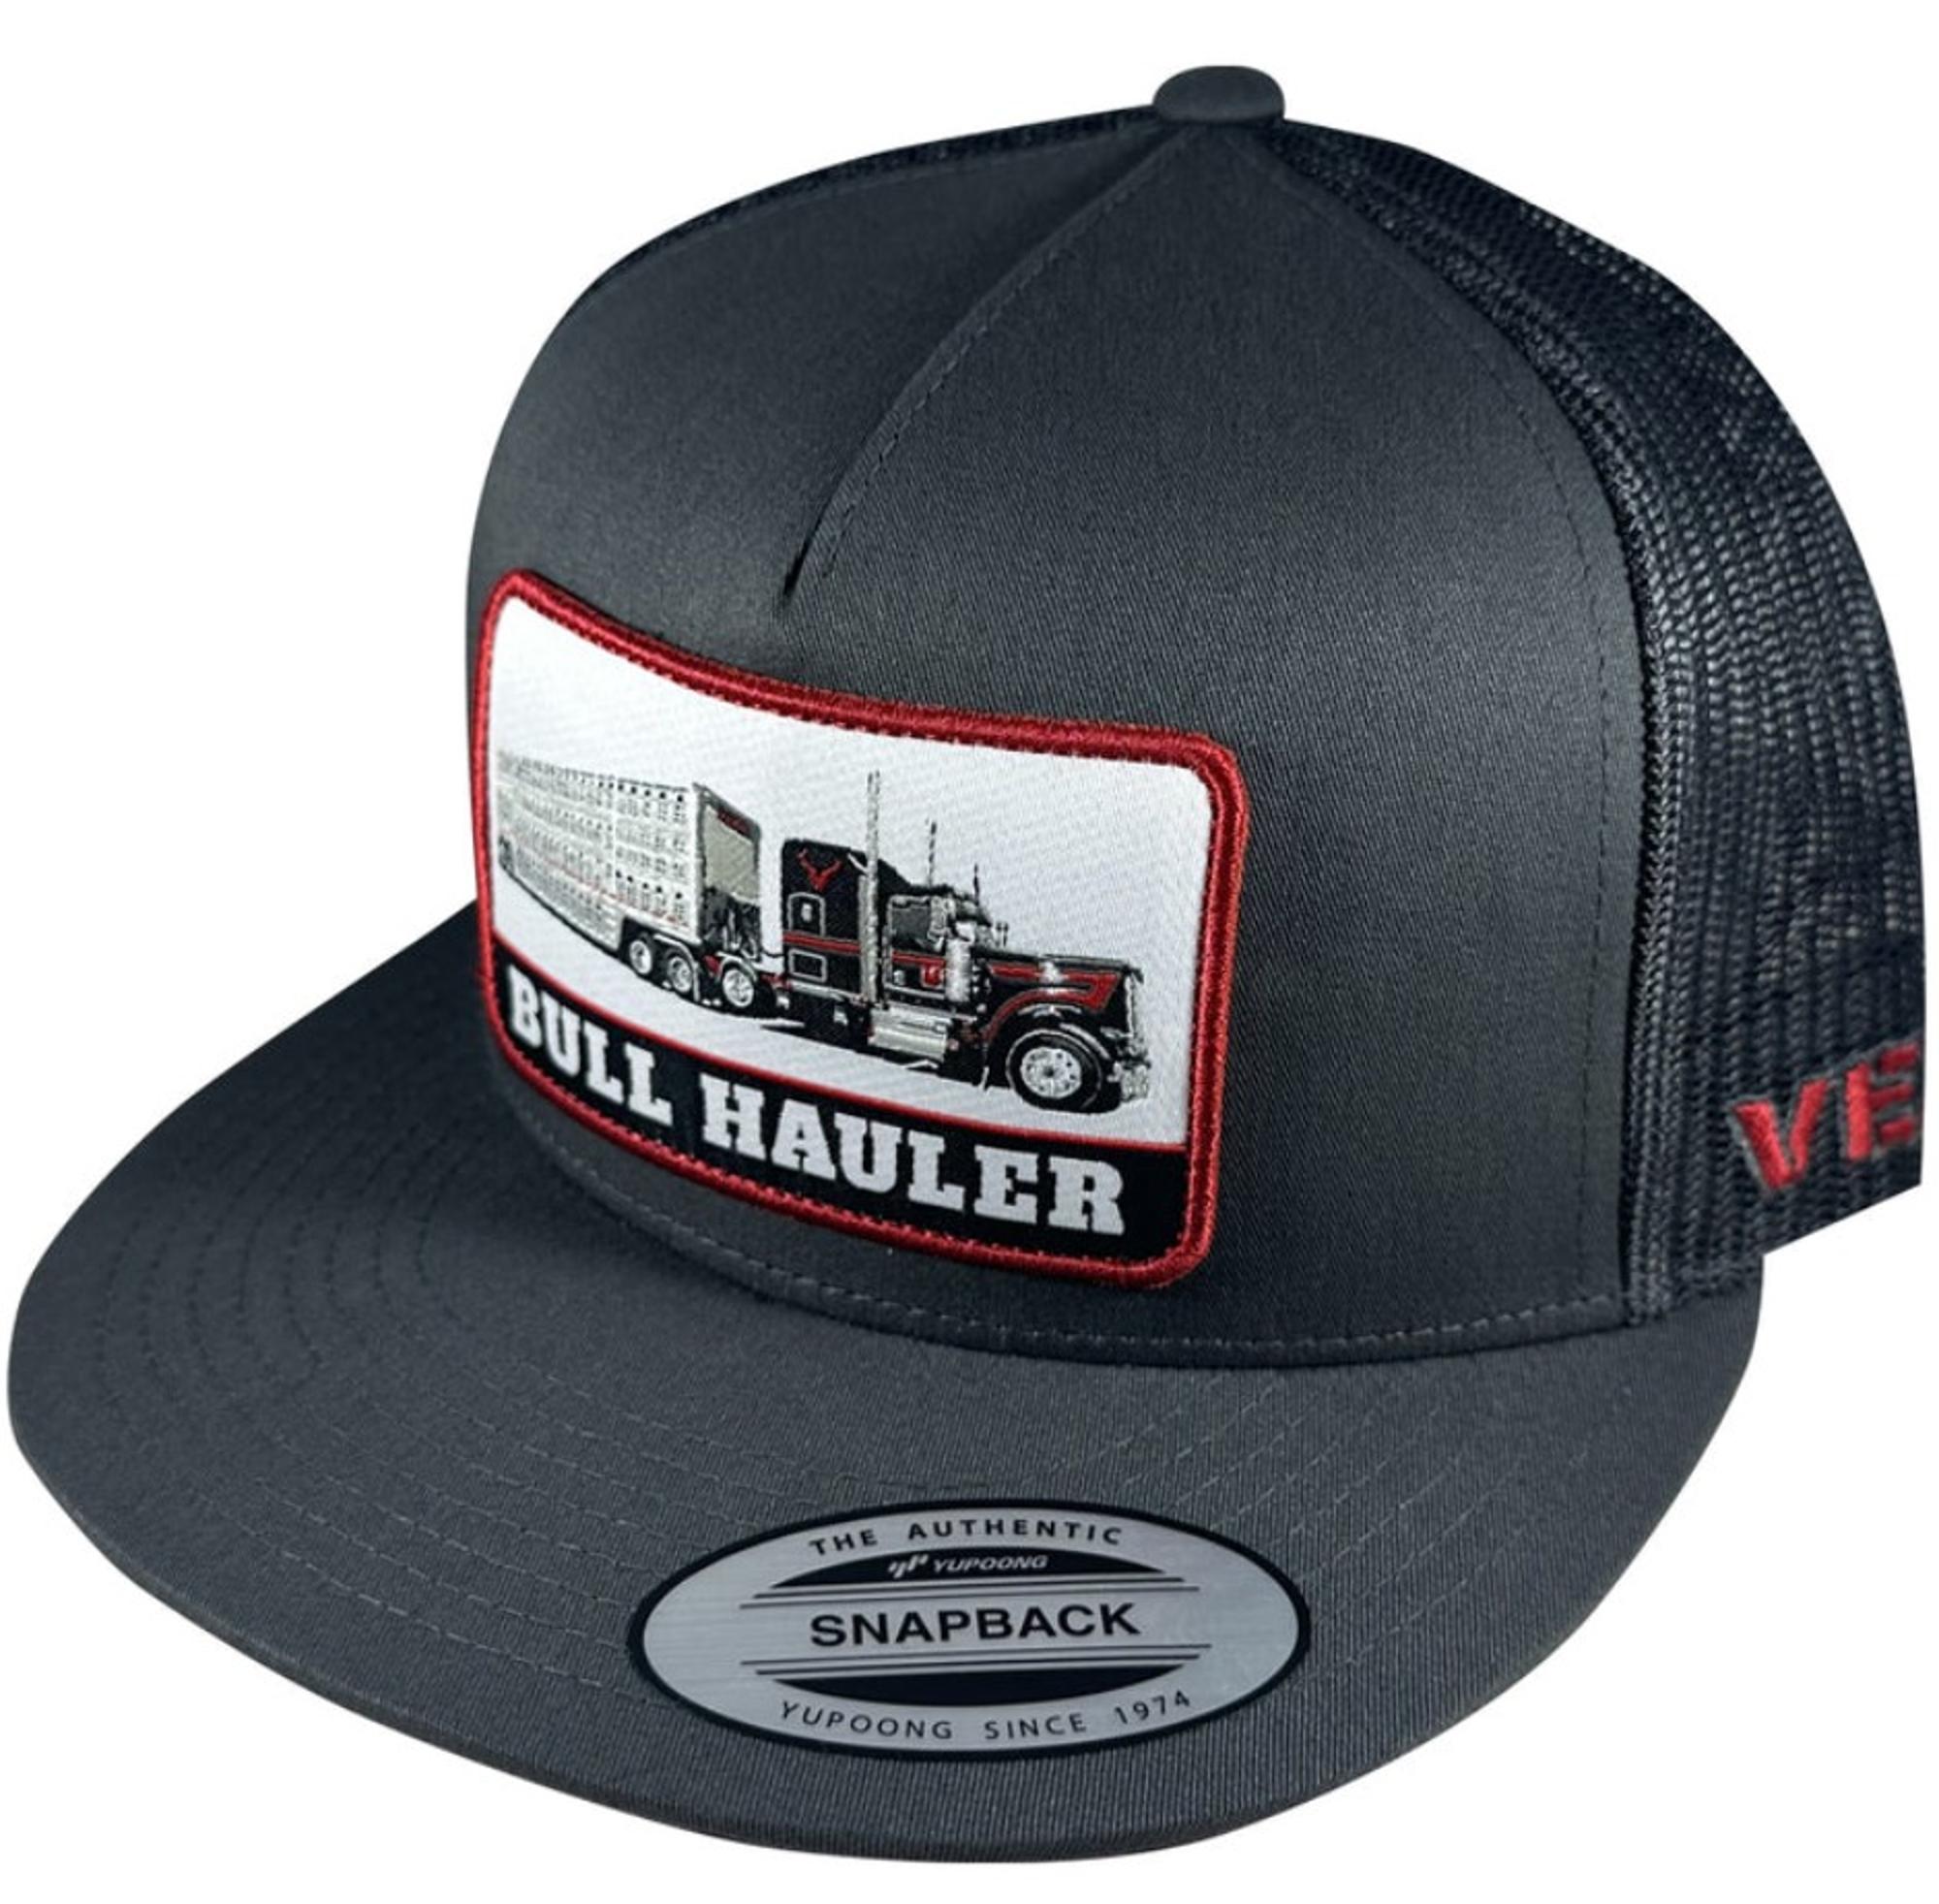 Bull Hauler Snapback Trucker Hat